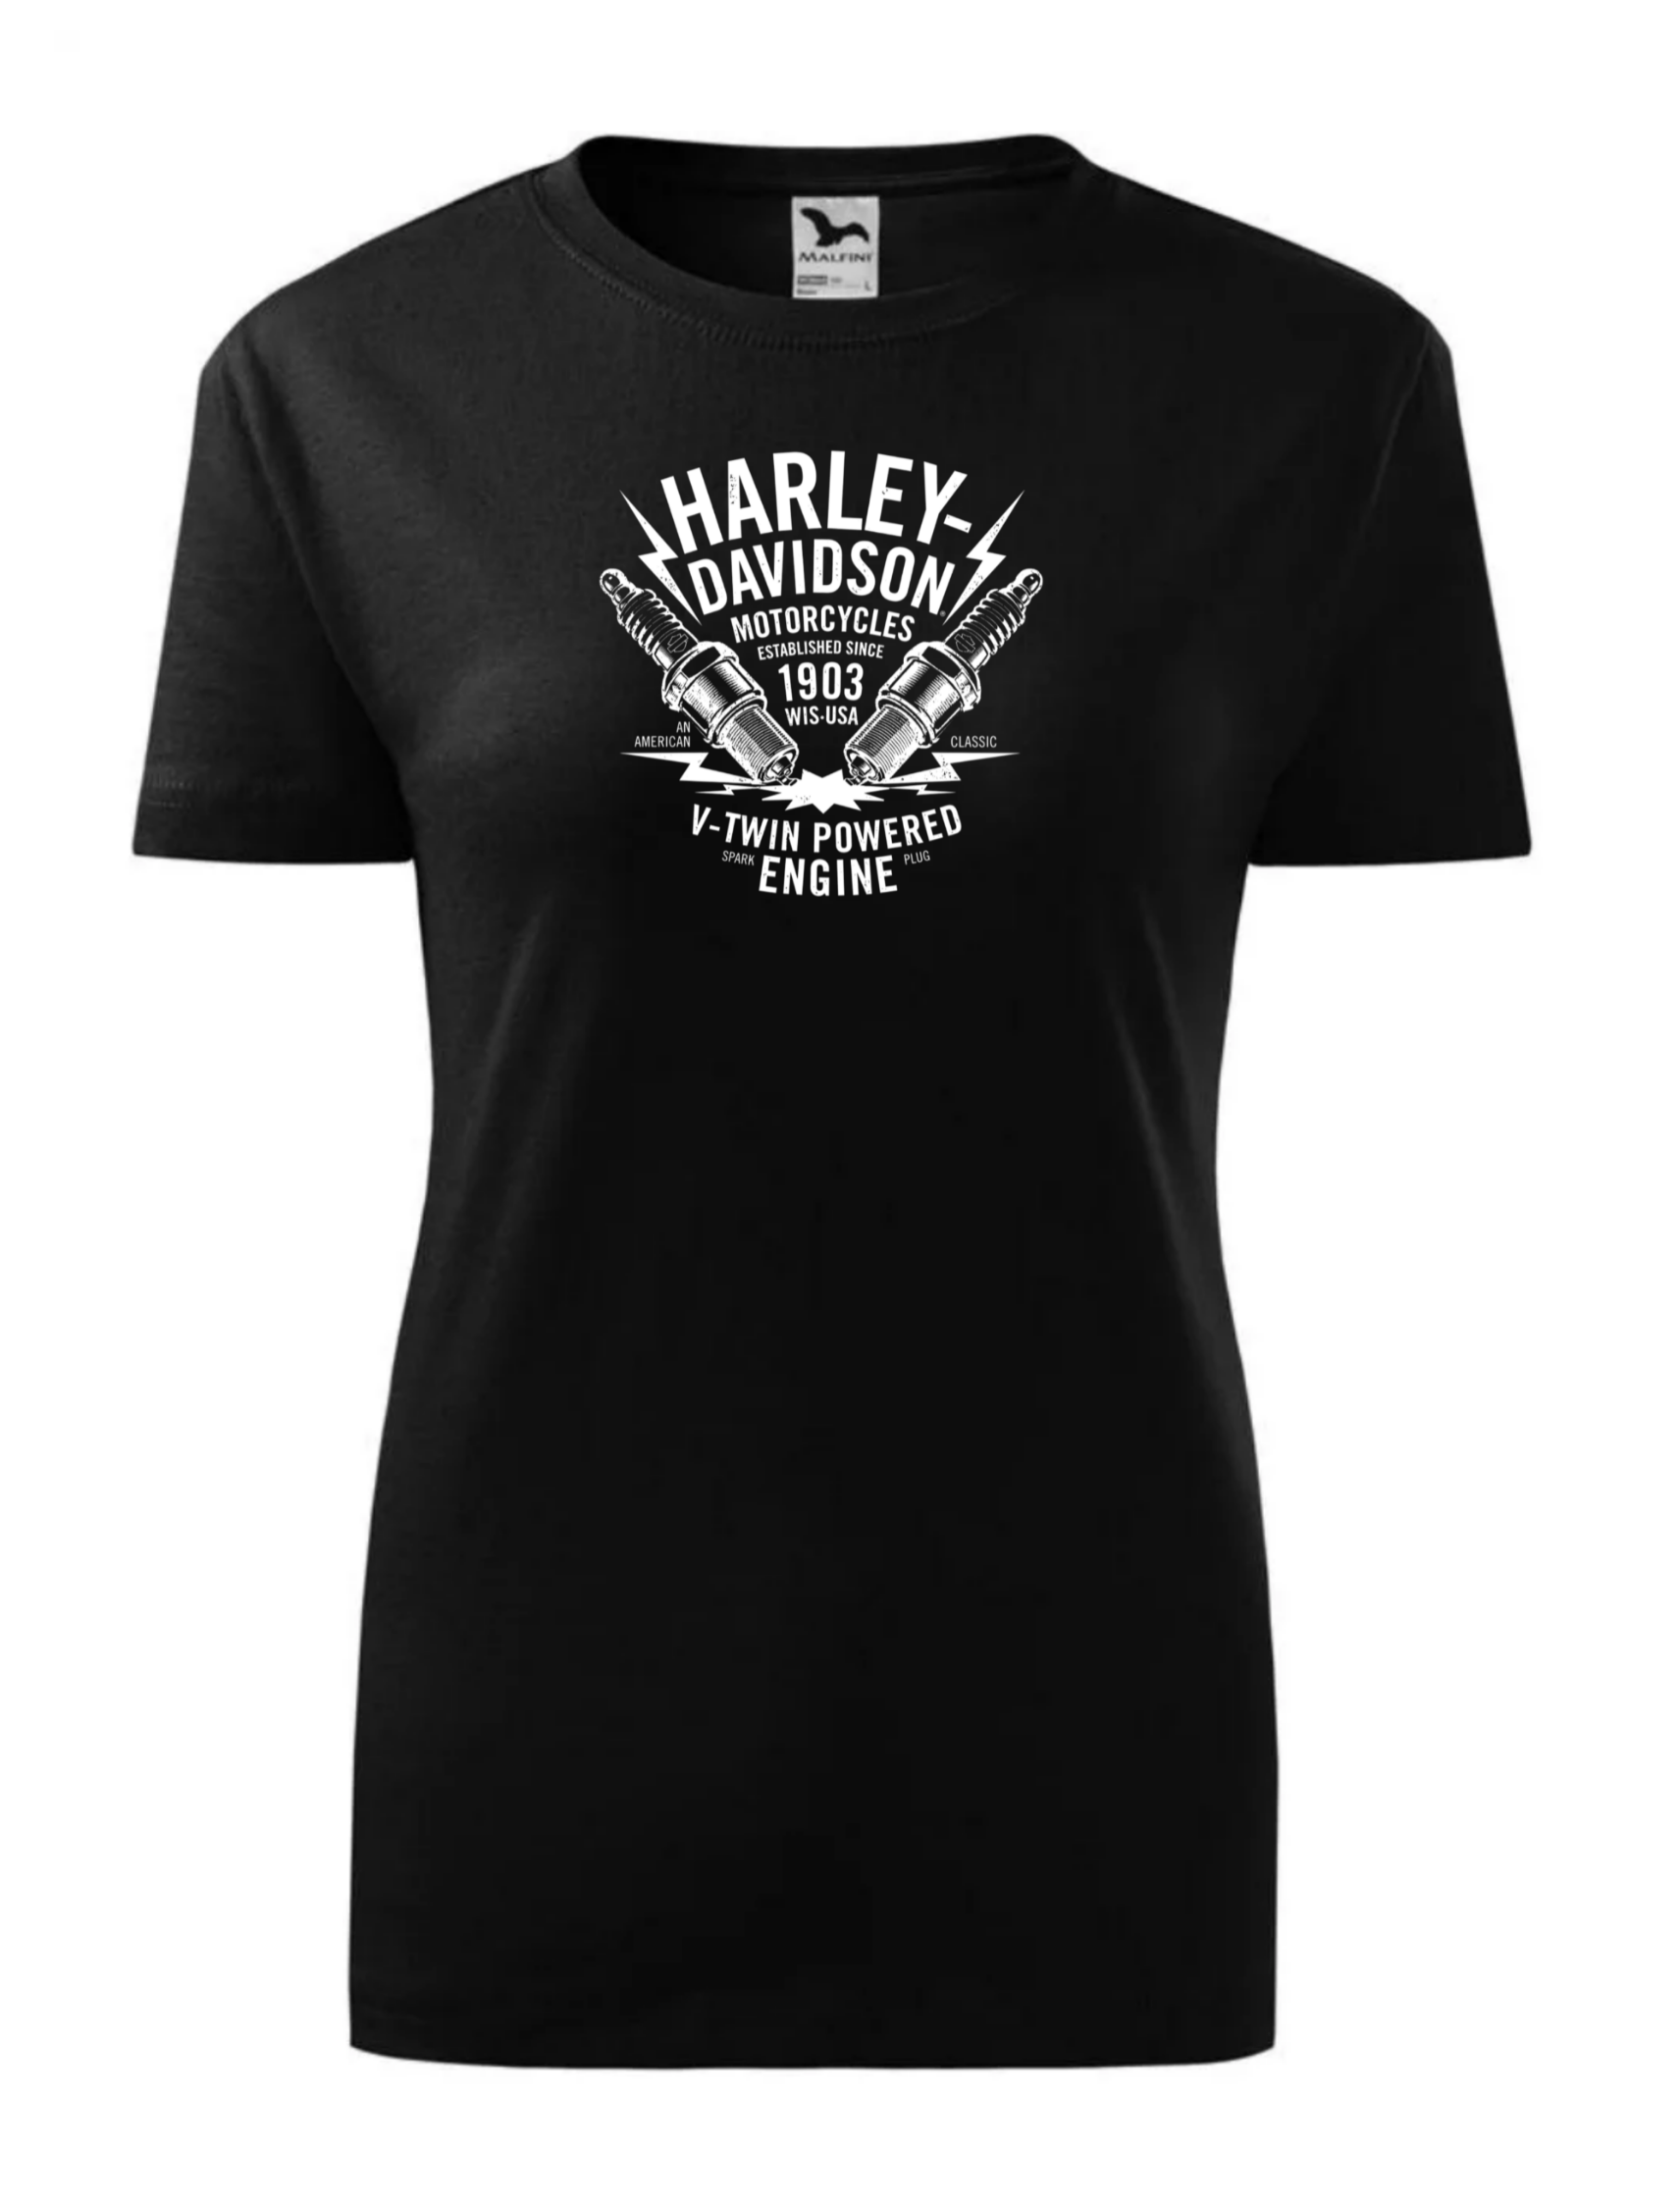 Dámské tričko s potiskem značky Harley Davidson 21